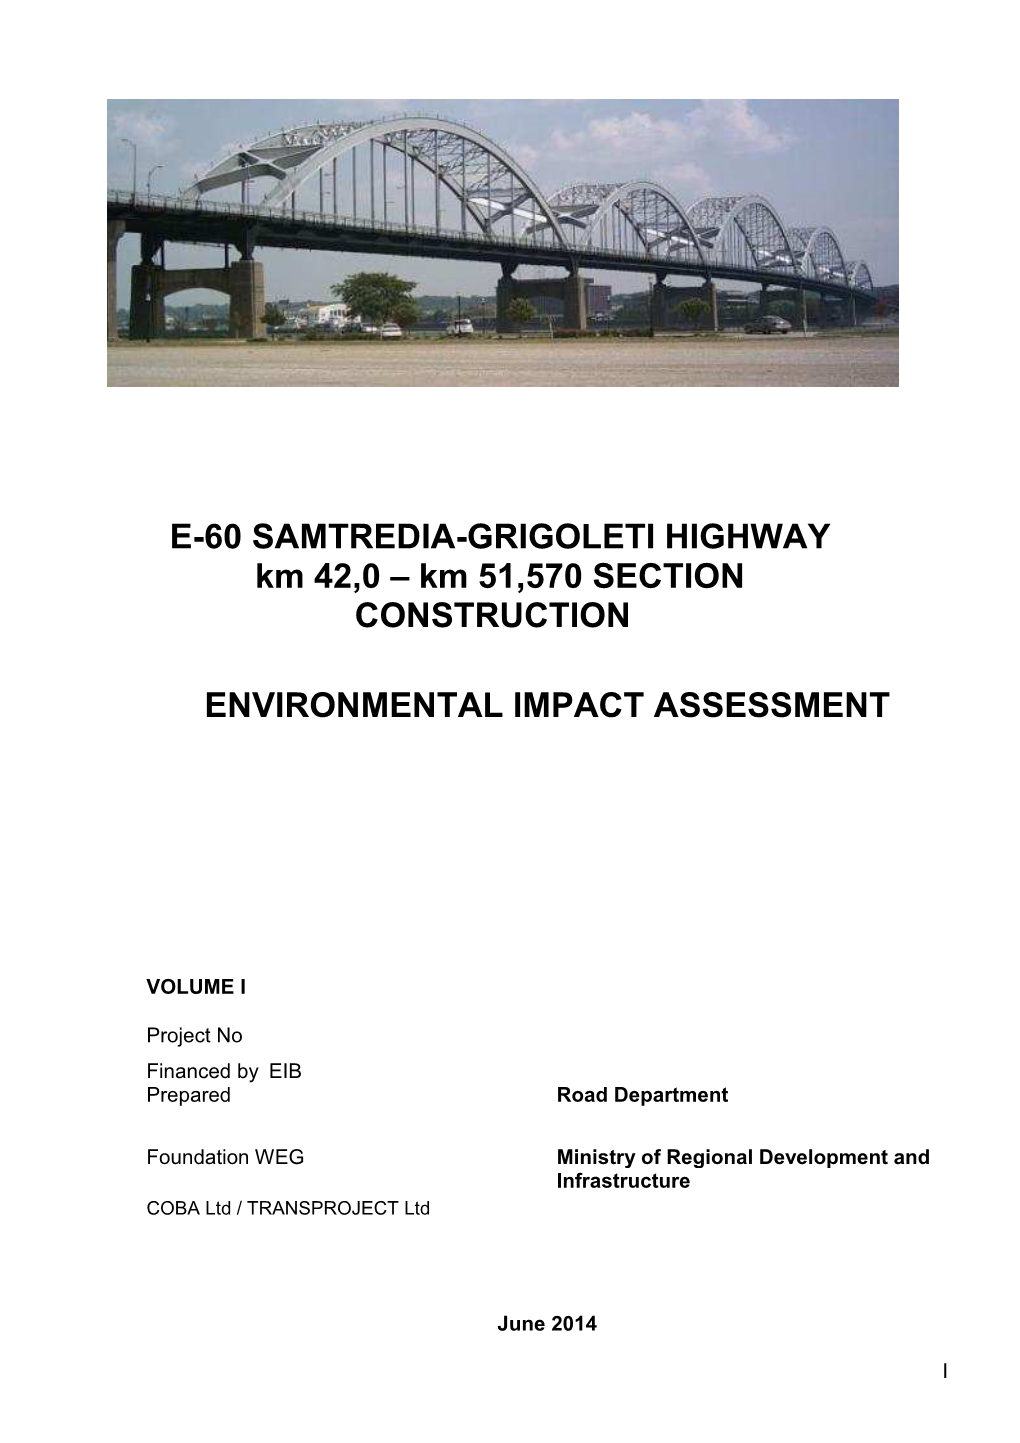 E-60 SAMTREDIA-GRIGOLETI HIGHWAY Km 42,0 – Km 51,570 SECTION CONSTRUCTION